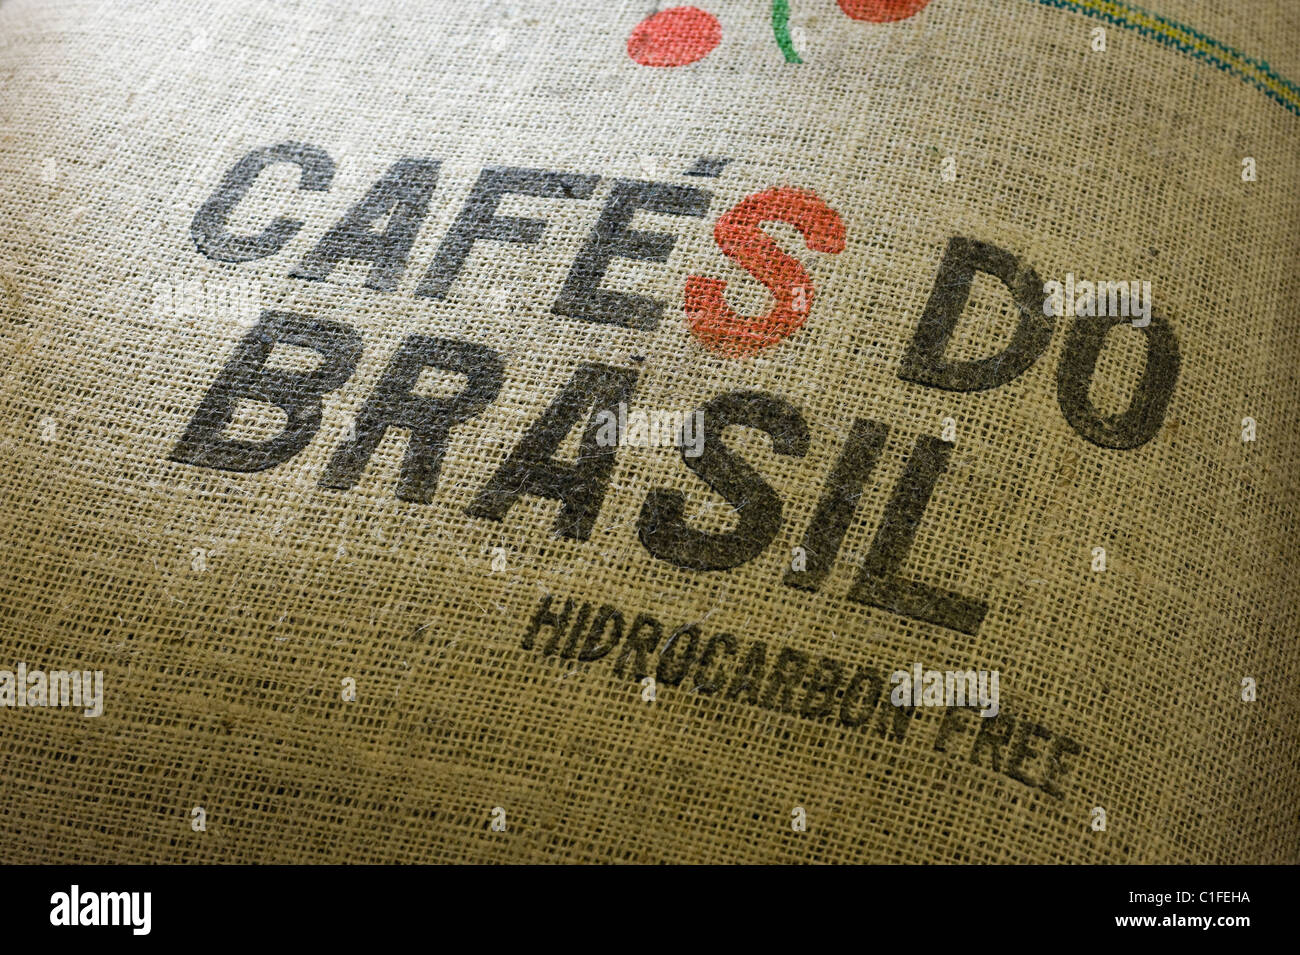 A coffee bag with an inscription Cafes do Brasil Stock Photo